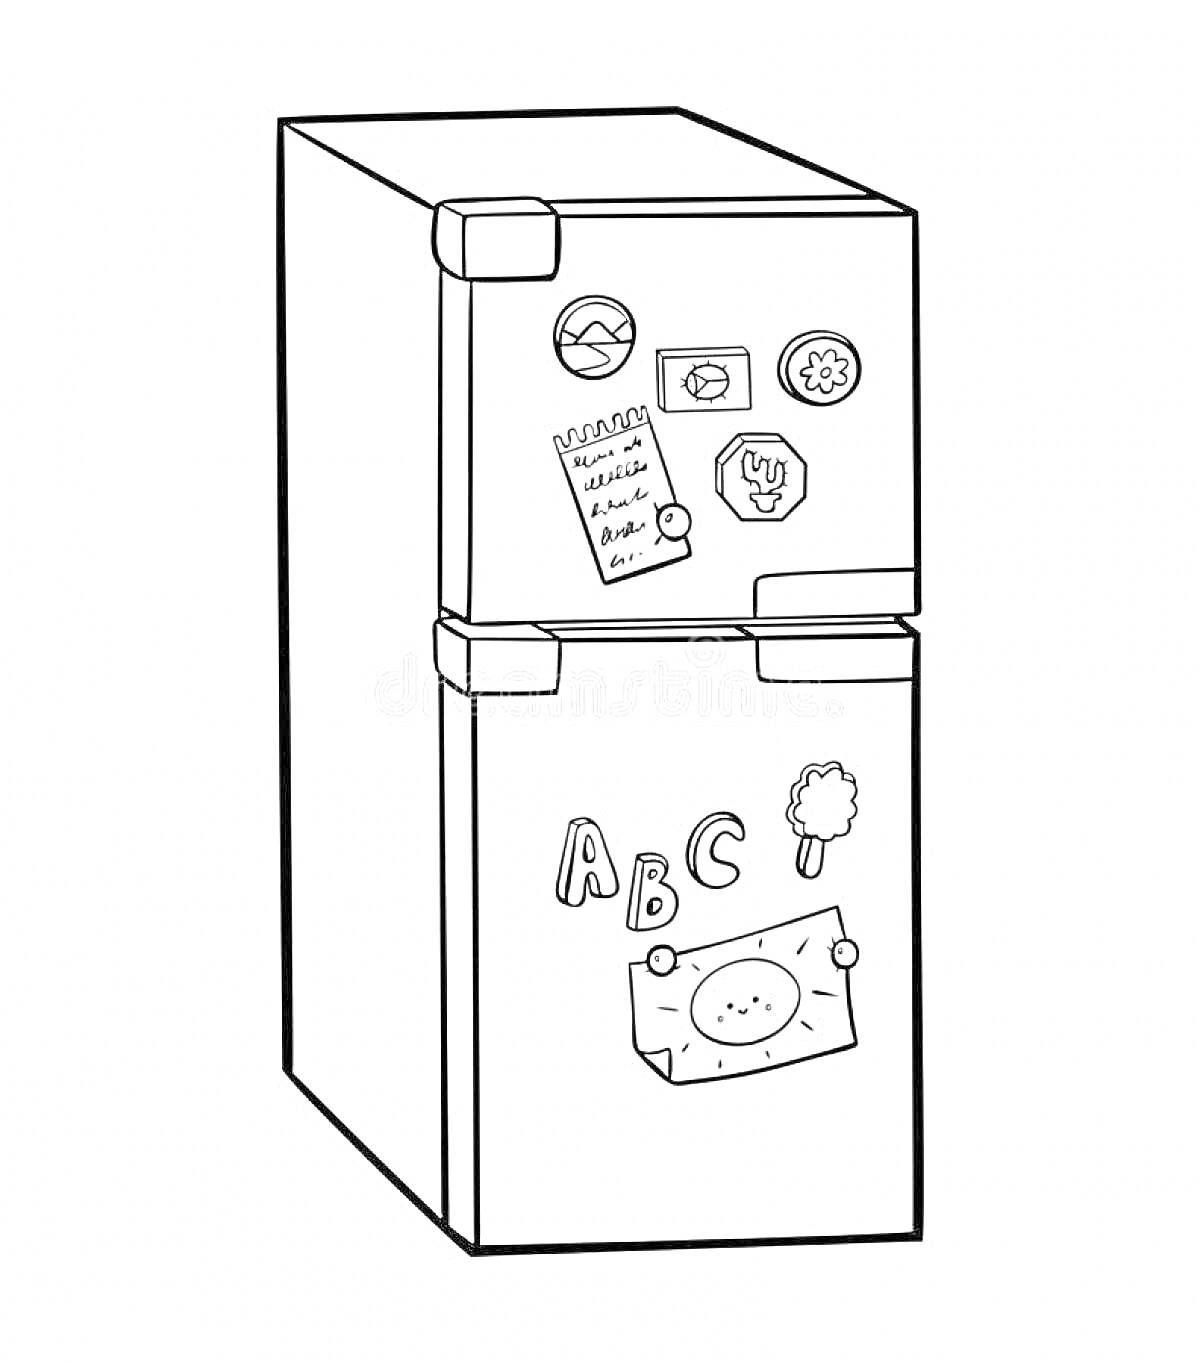 Раскраска Холодильник с магнитами, примечаниями и рисунками